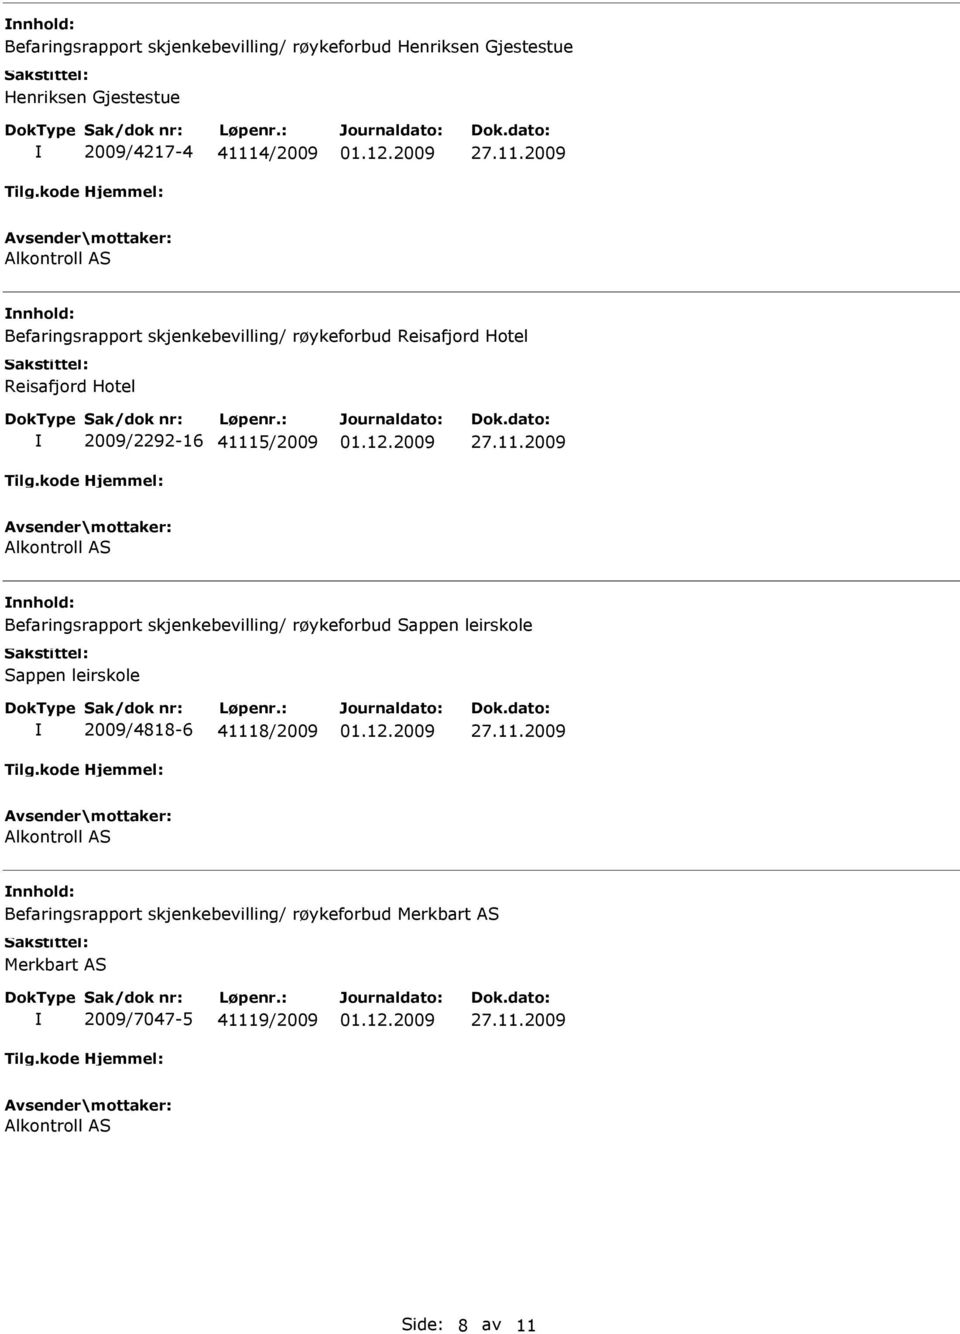 41115/2009 nnhold: Befaringsrapport skjenkebevilling/ røykeforbud Sappen leirskole Sappen leirskole 2009/4818-6